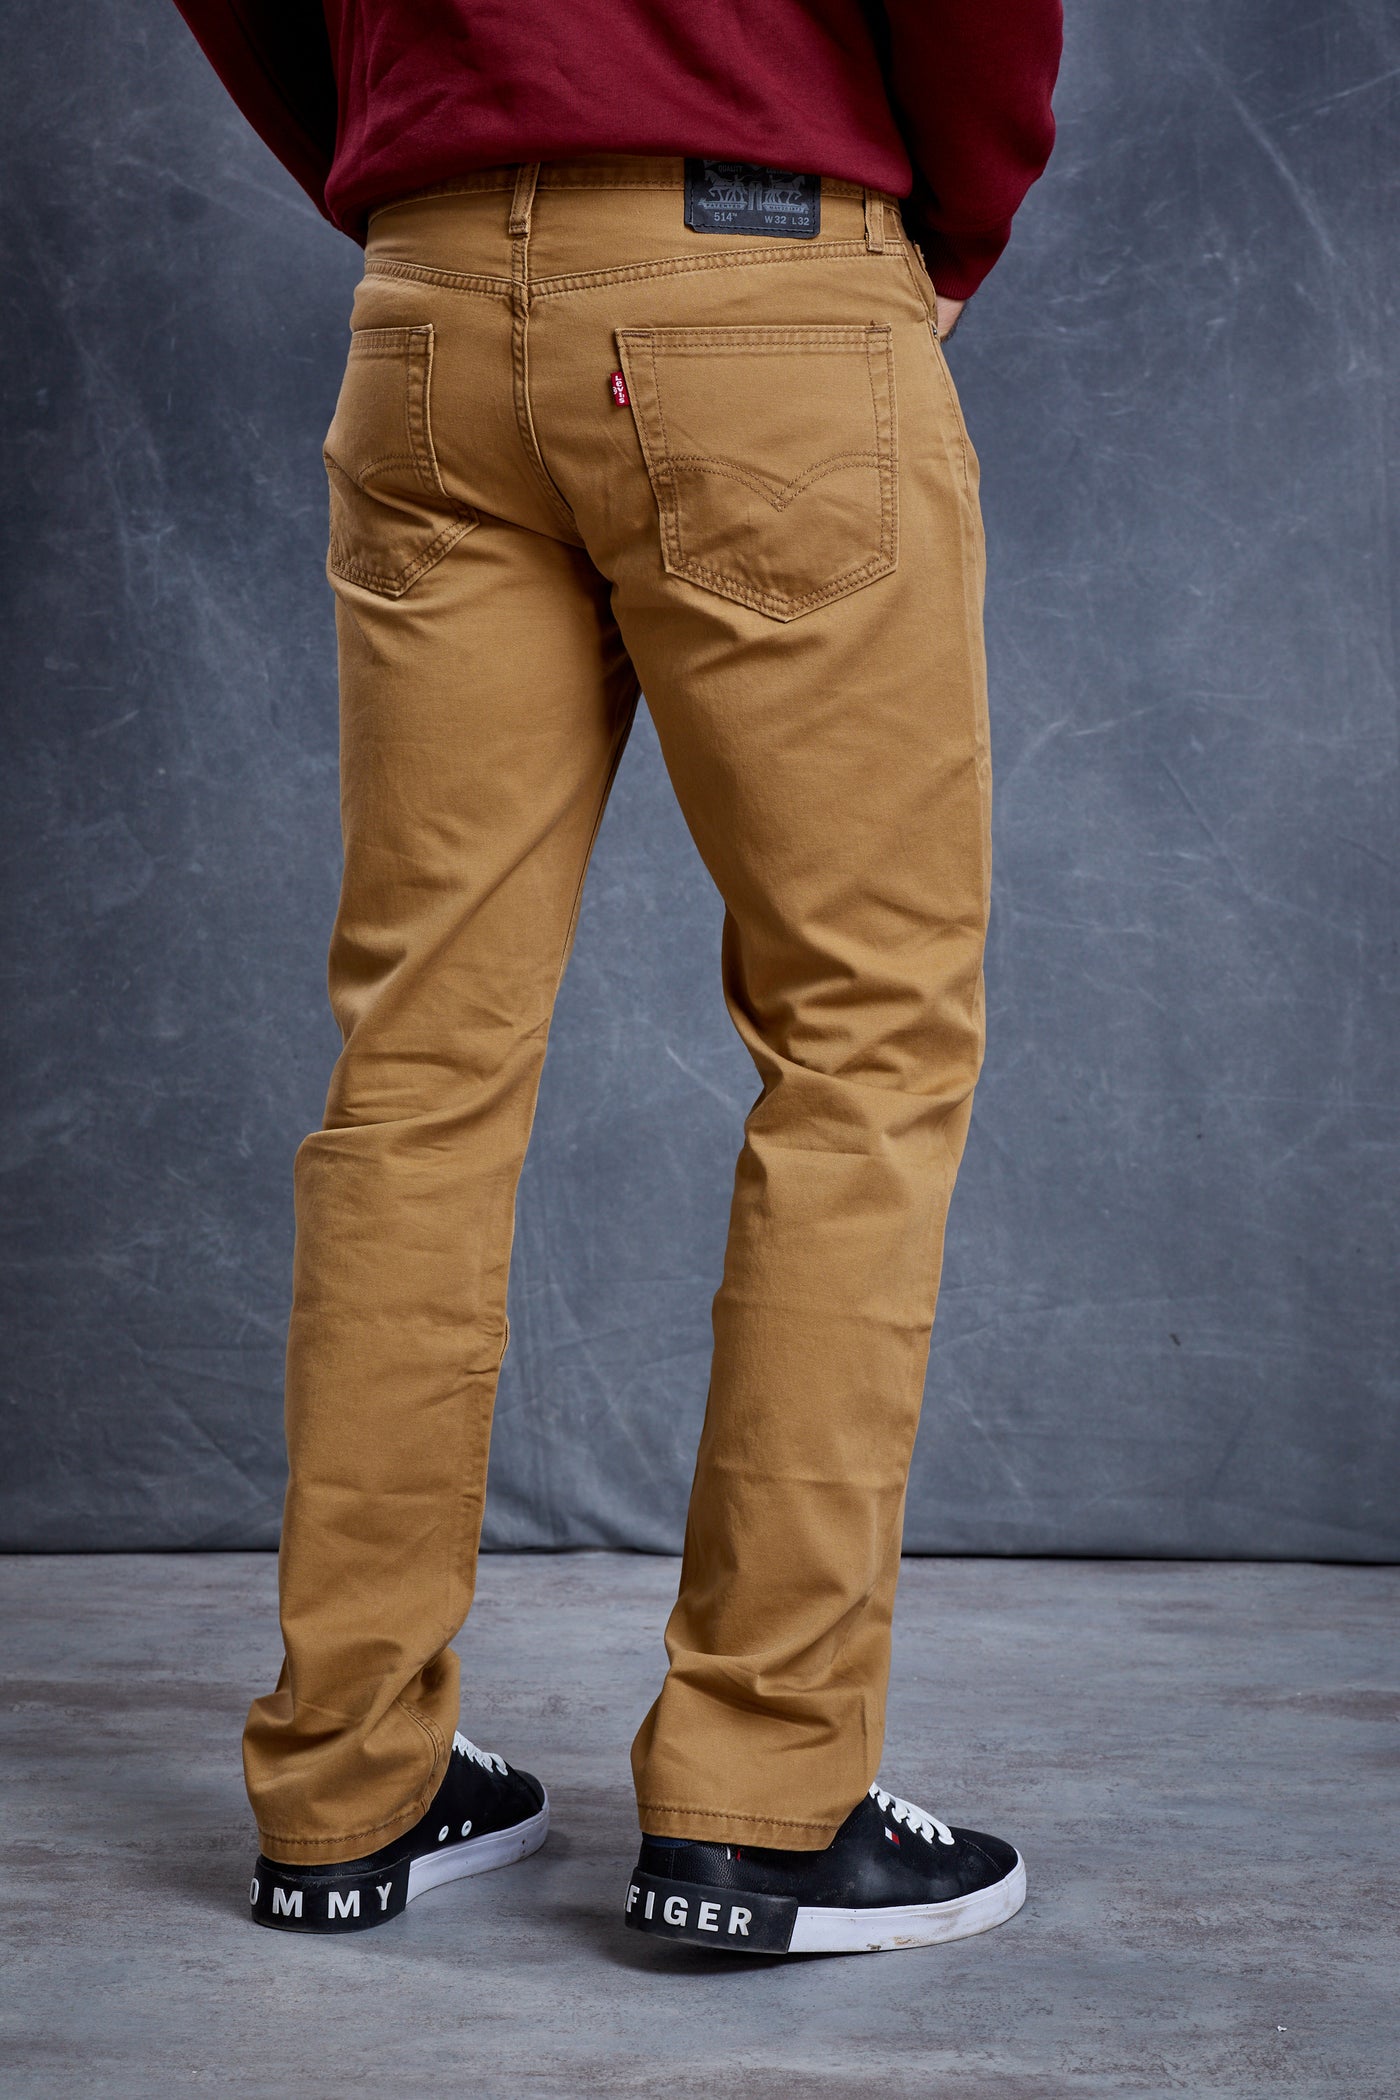 מכנס ג'ינס בצבע קאמל 514